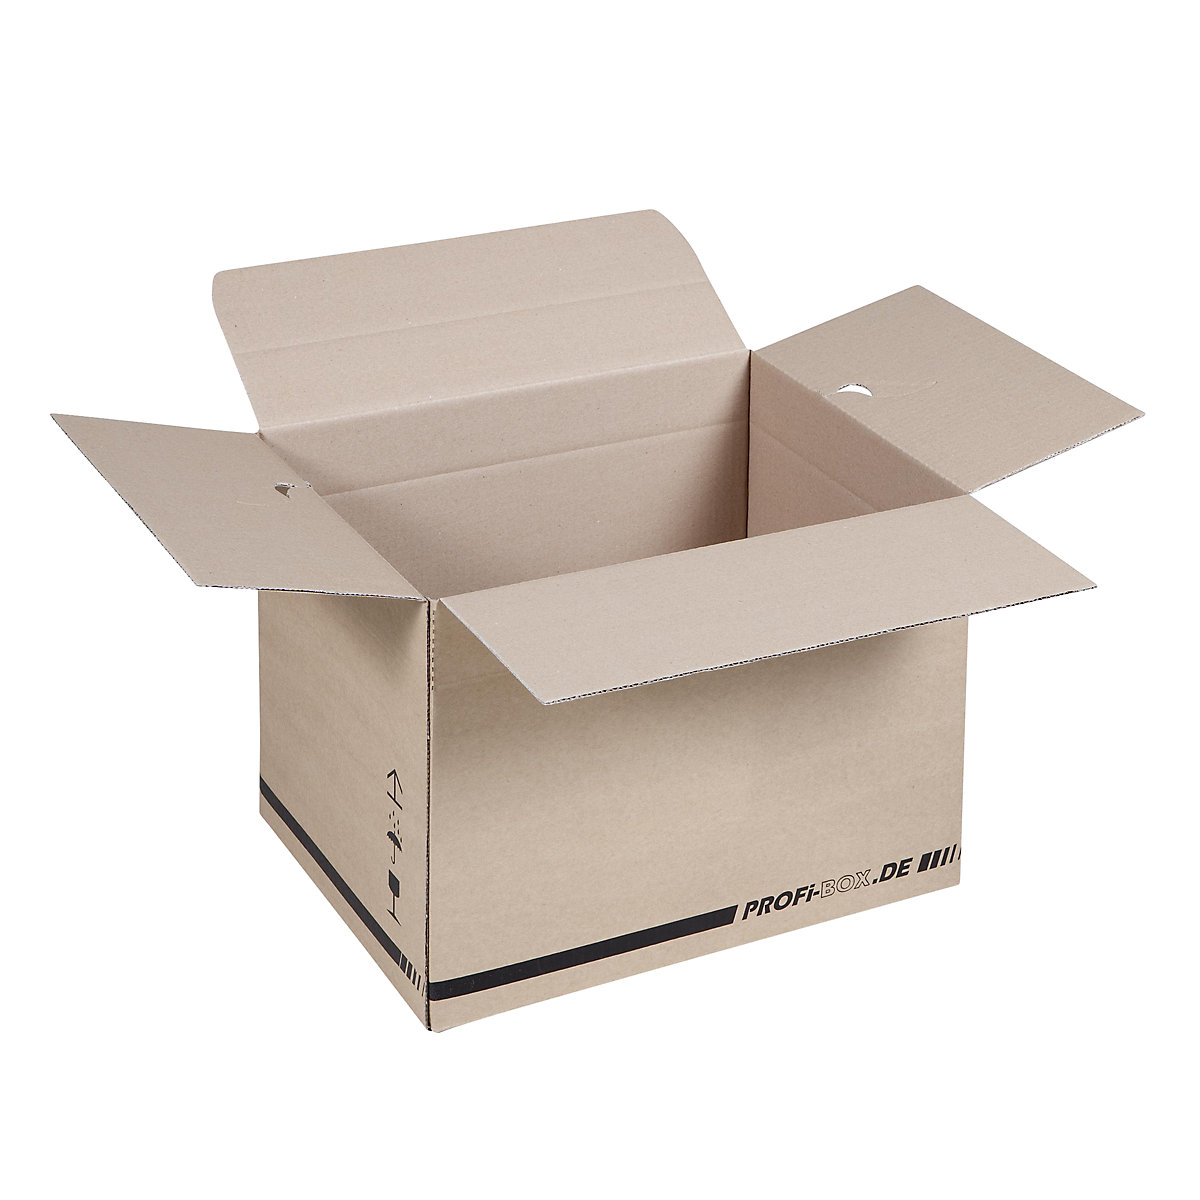 Profesionalne kutije, od 1-valnog kartona, FEFCO 0701, unutarnje dimenzije 384 x 284 x 284 mm, pak. 50 kom.-1